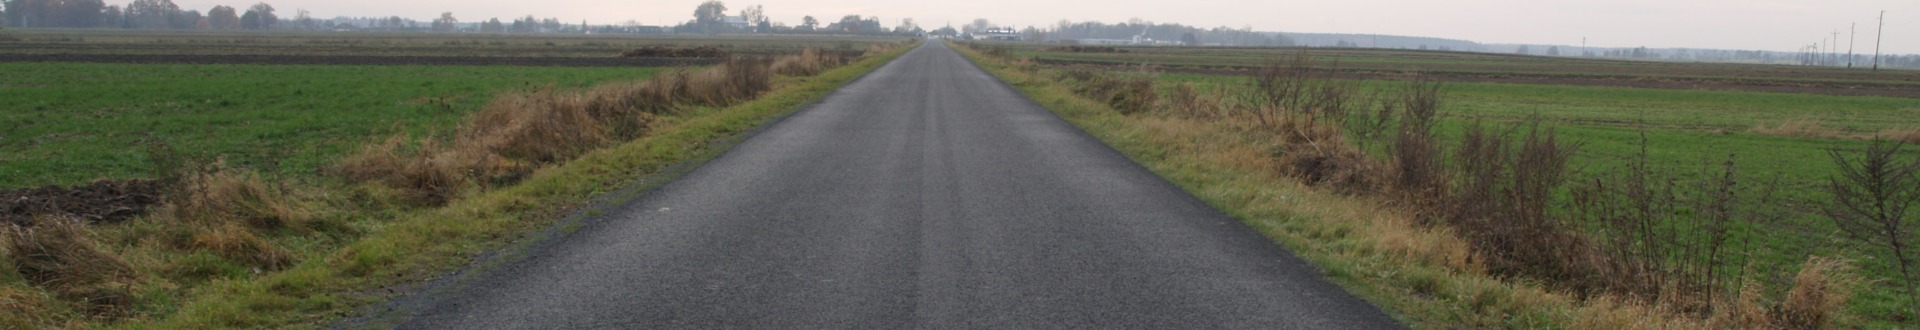 Zdjęcie przedstawia asfaltową drogę otoczoną łąkami.